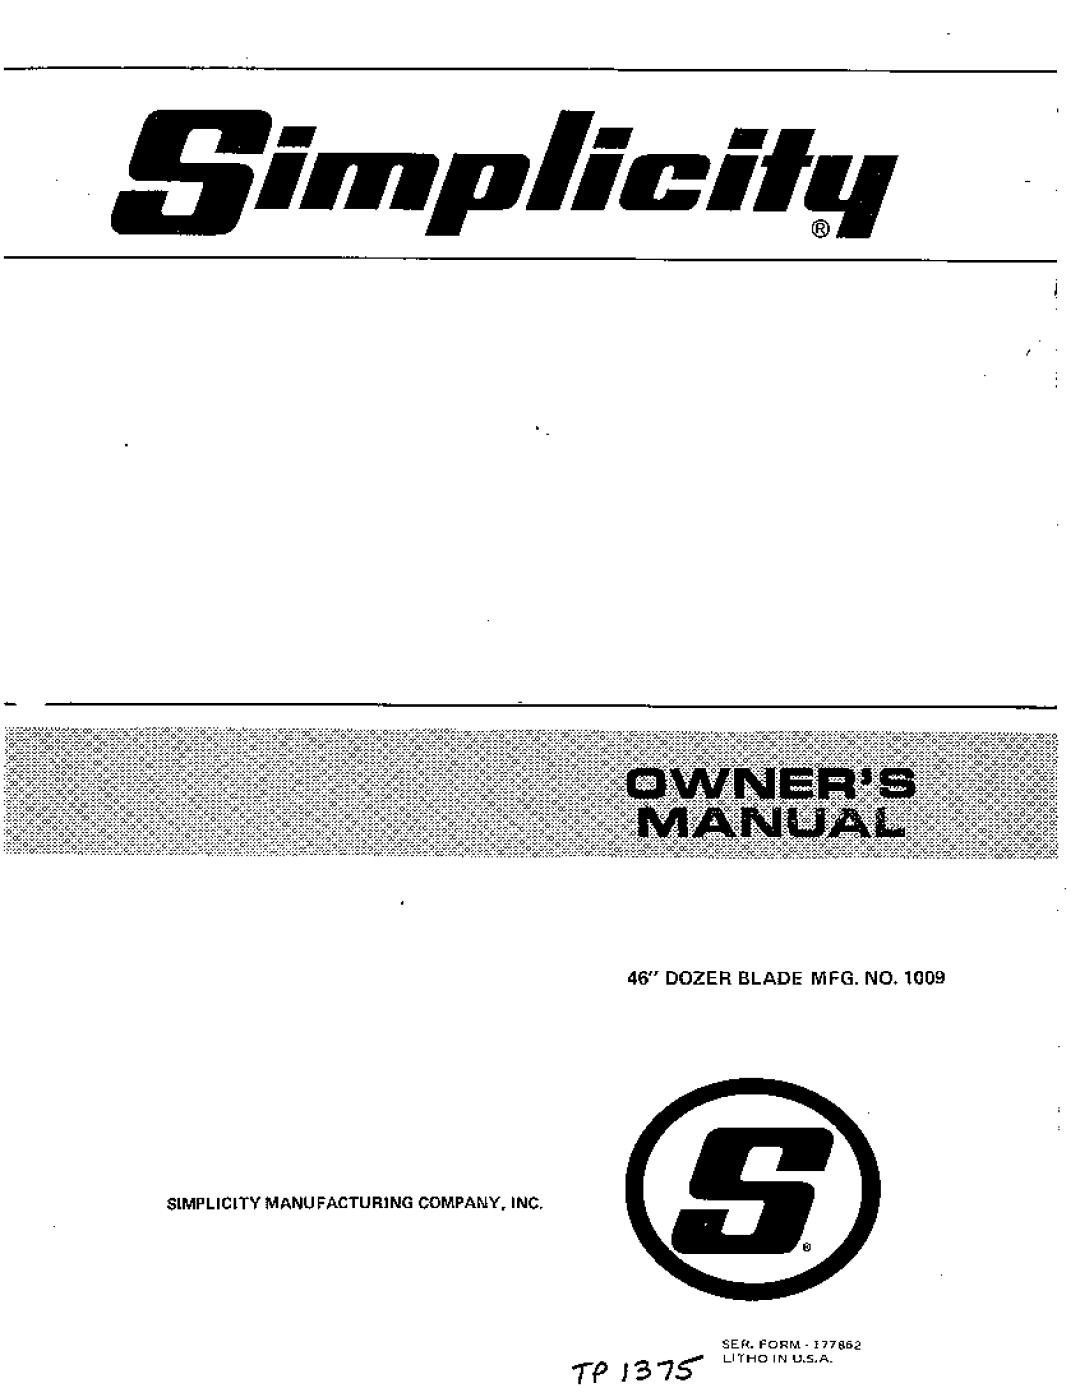 Simplicity 1009 manual 